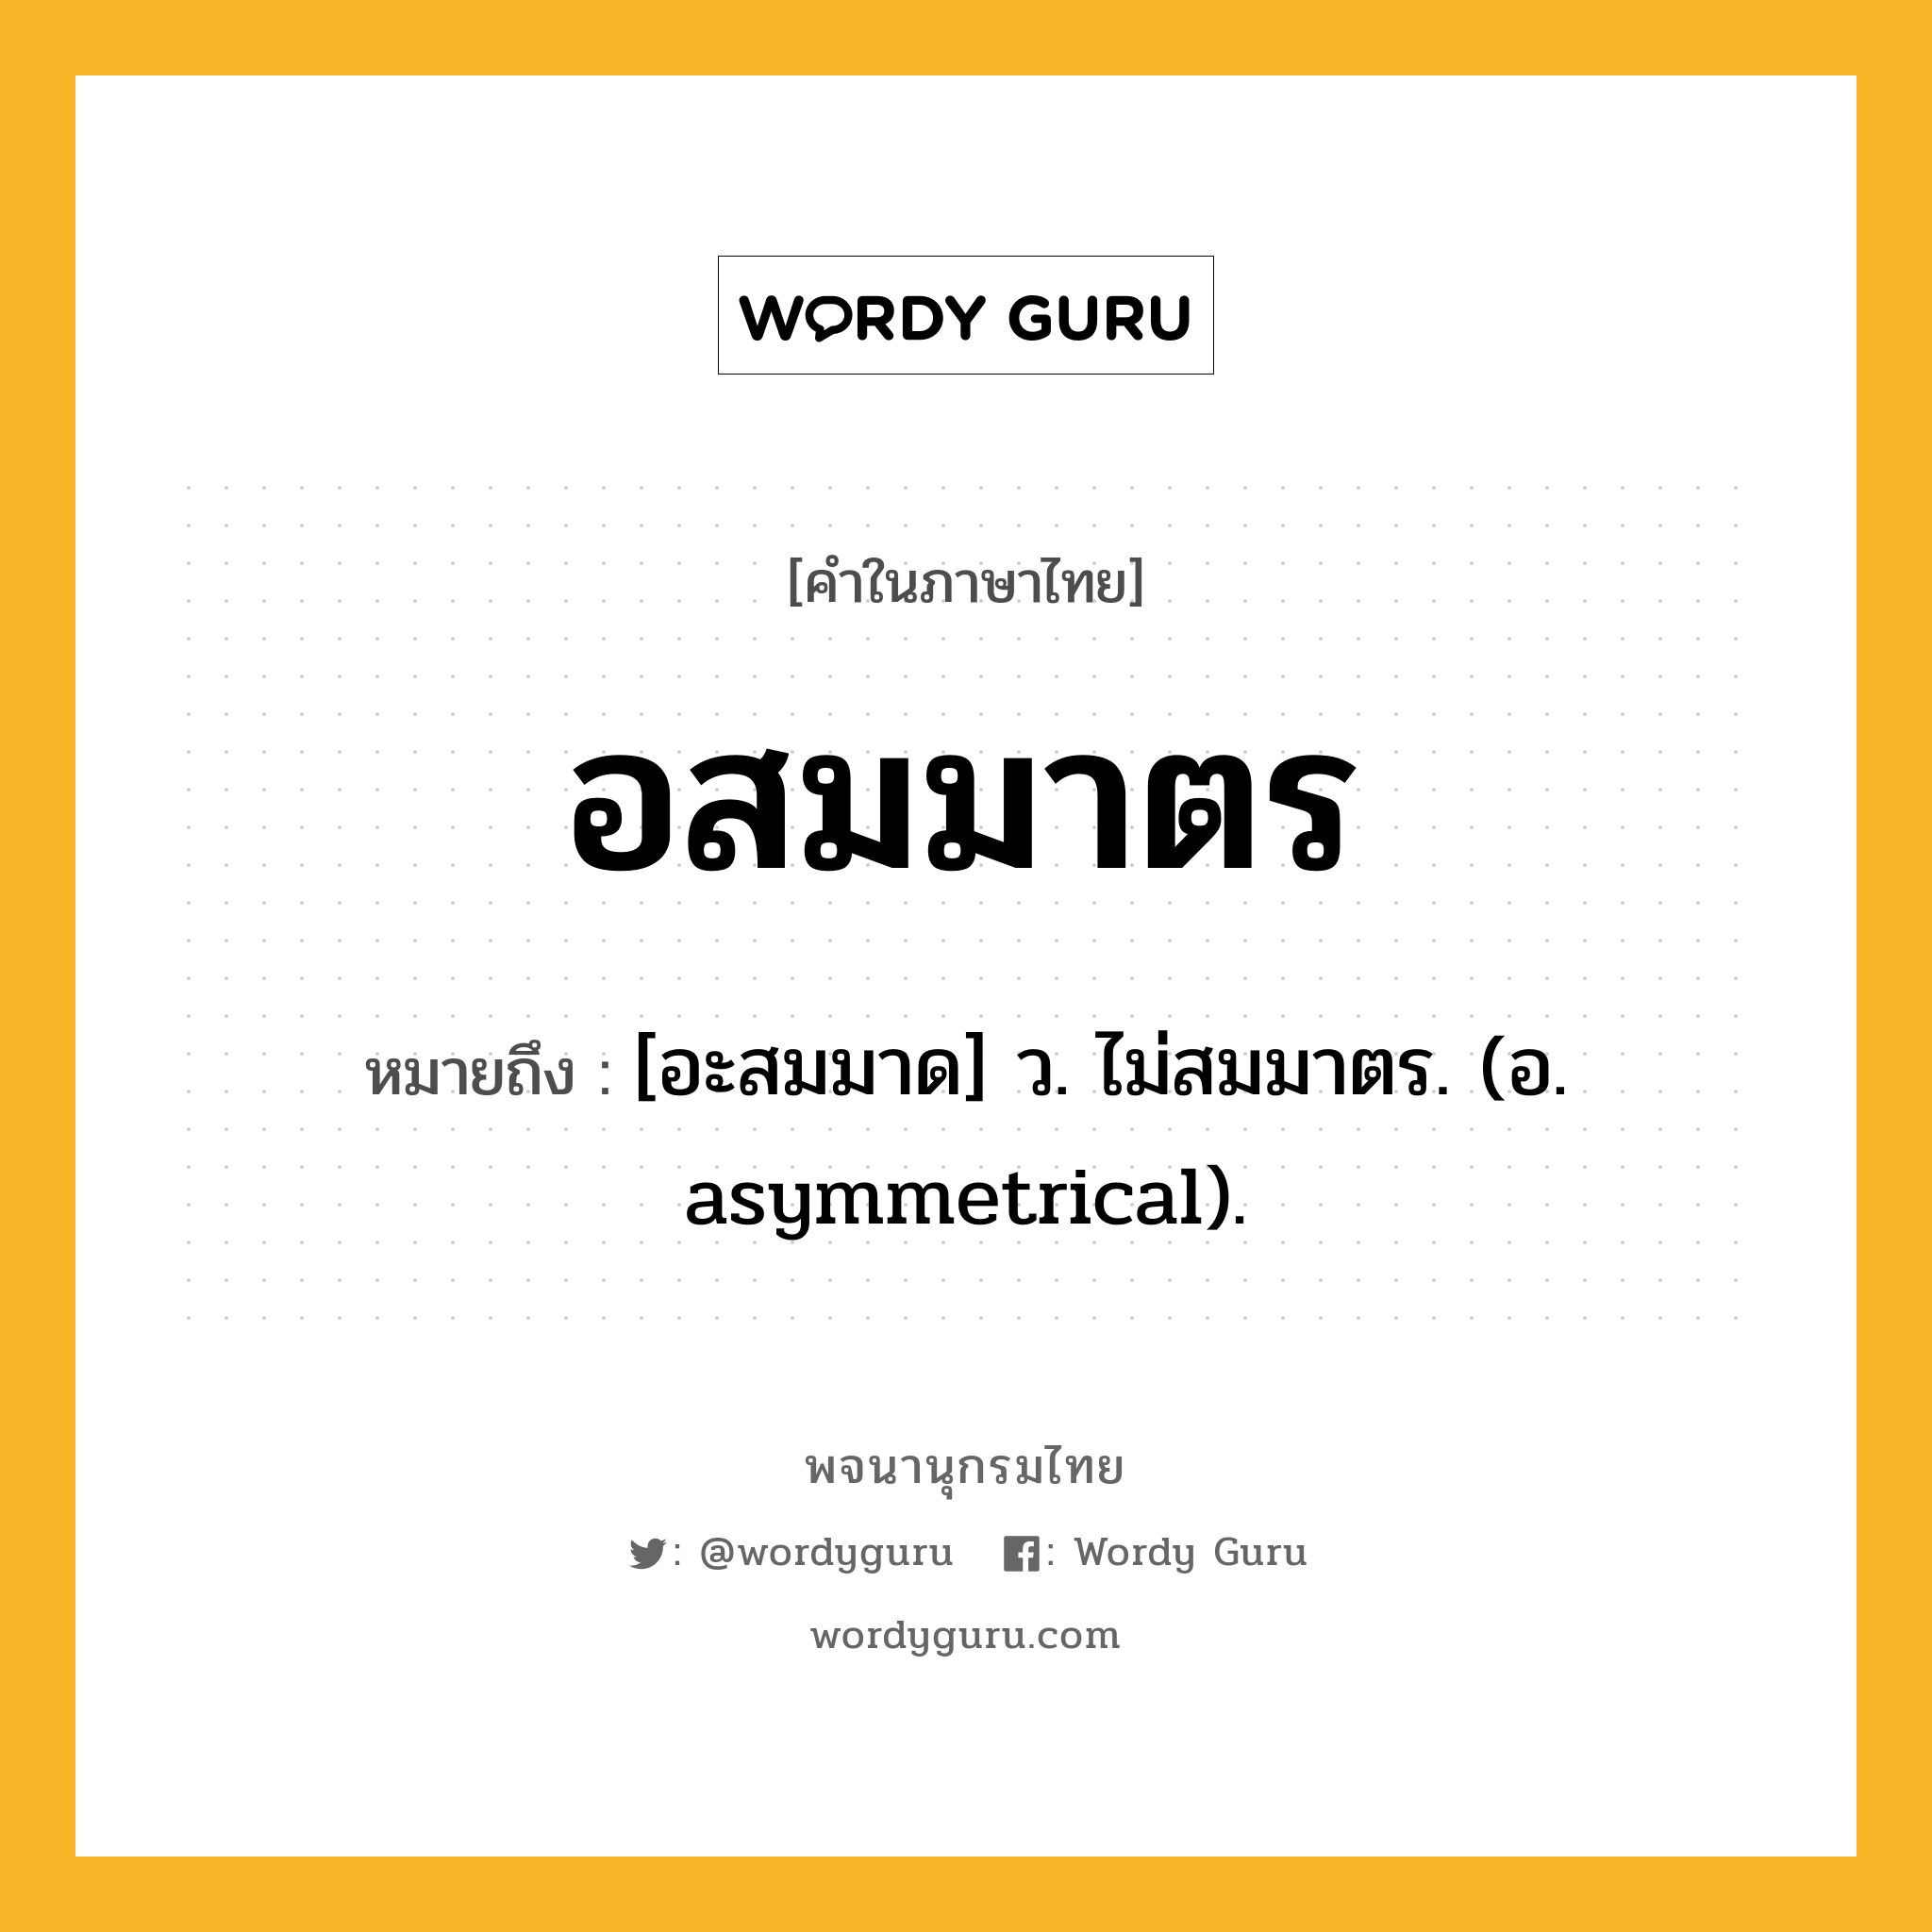 อสมมาตร หมายถึงอะไร?, คำในภาษาไทย อสมมาตร หมายถึง [อะสมมาด] ว. ไม่สมมาตร. (อ. asymmetrical).